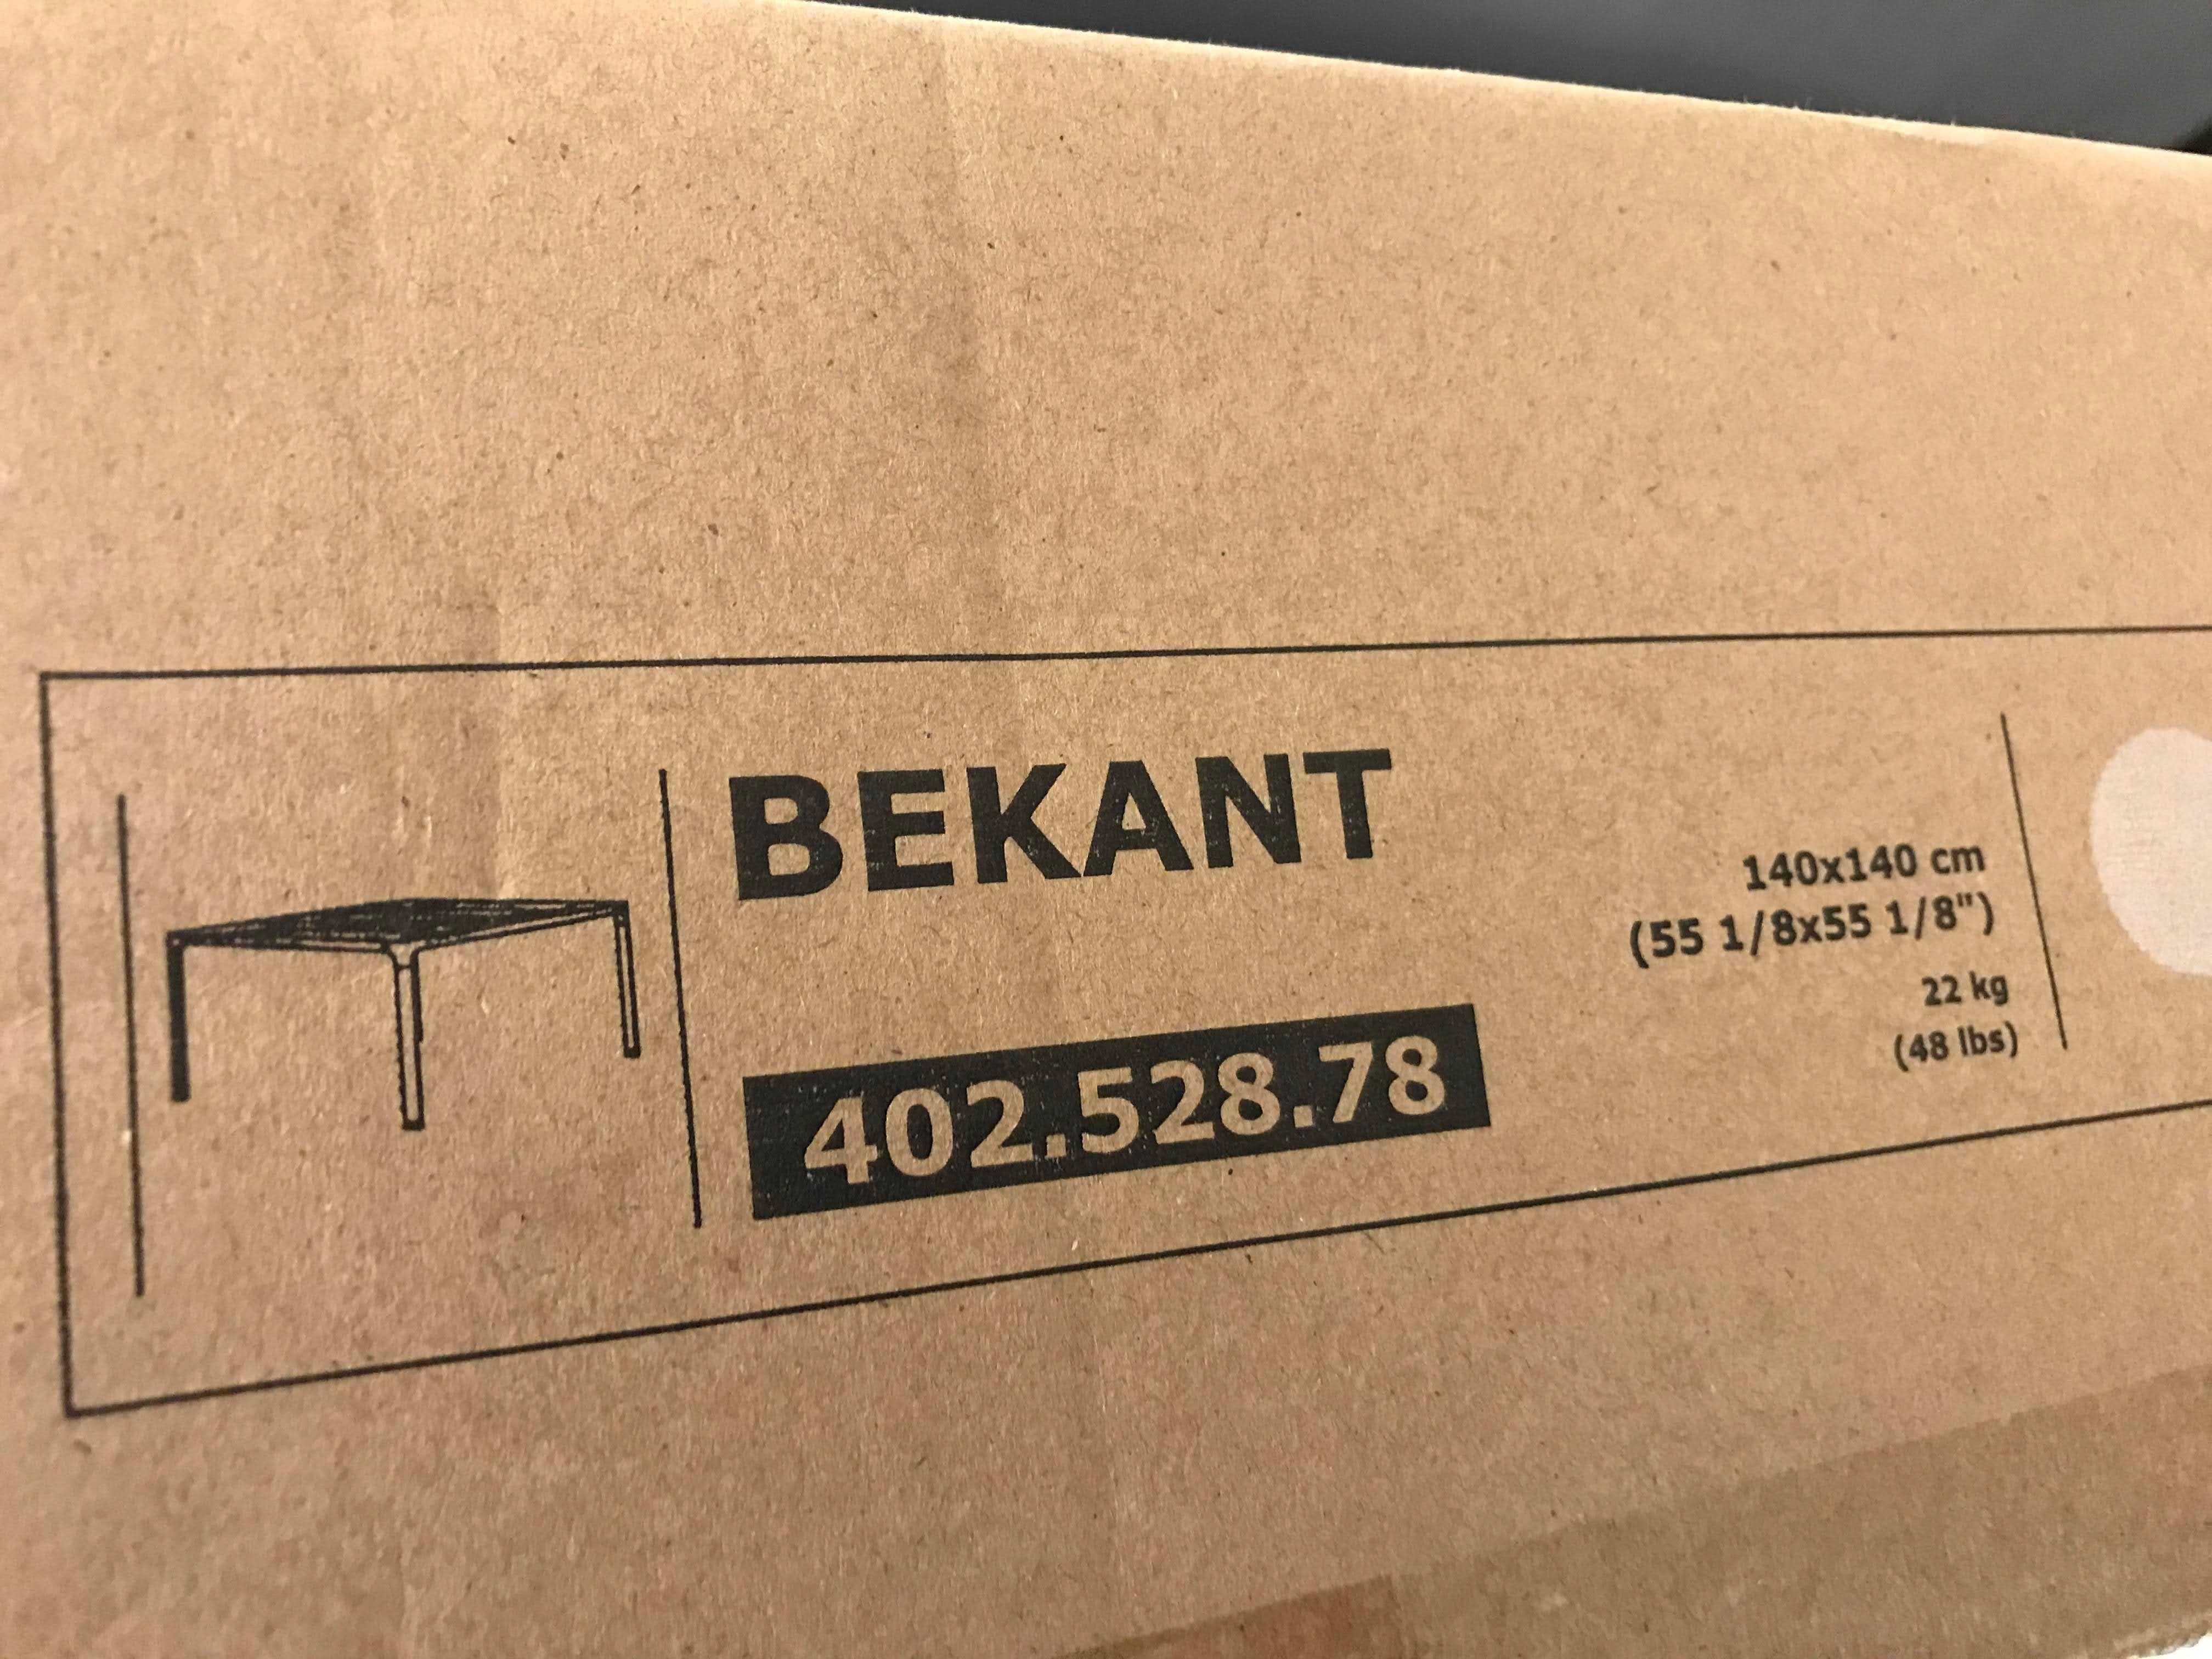 IKEA BEKANT nowy stół bez blatu 140 * 140 * 73 cm, BIAŁY 402.528.78